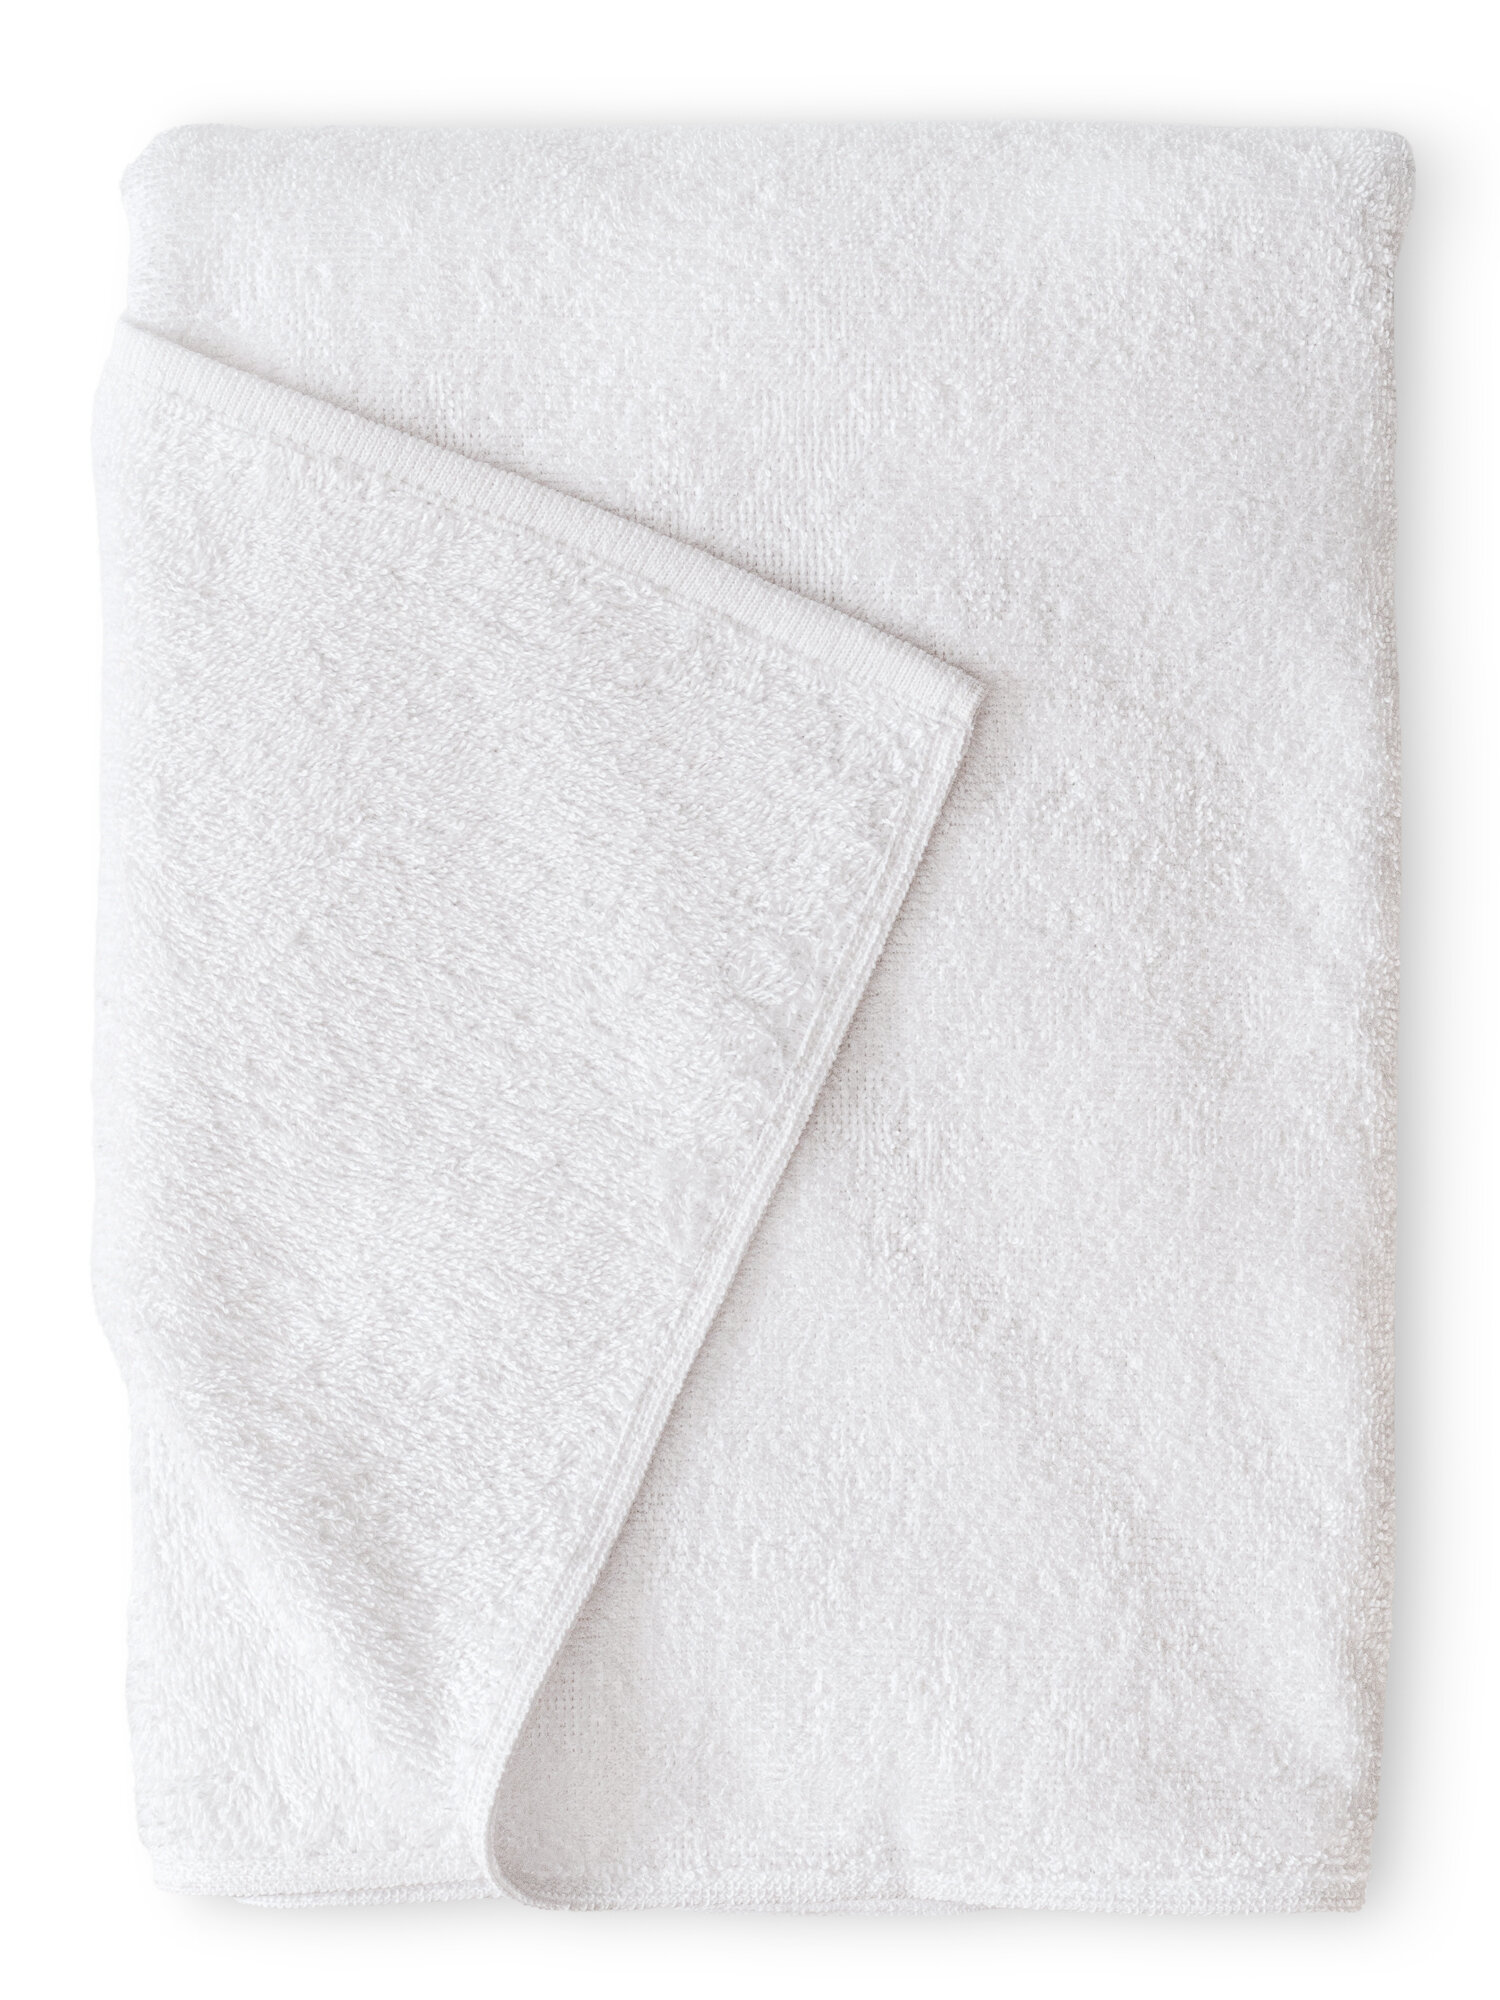 Махровое полотенце 50x70 банное белого цвета terryOne 1 шт. 450 г/м2